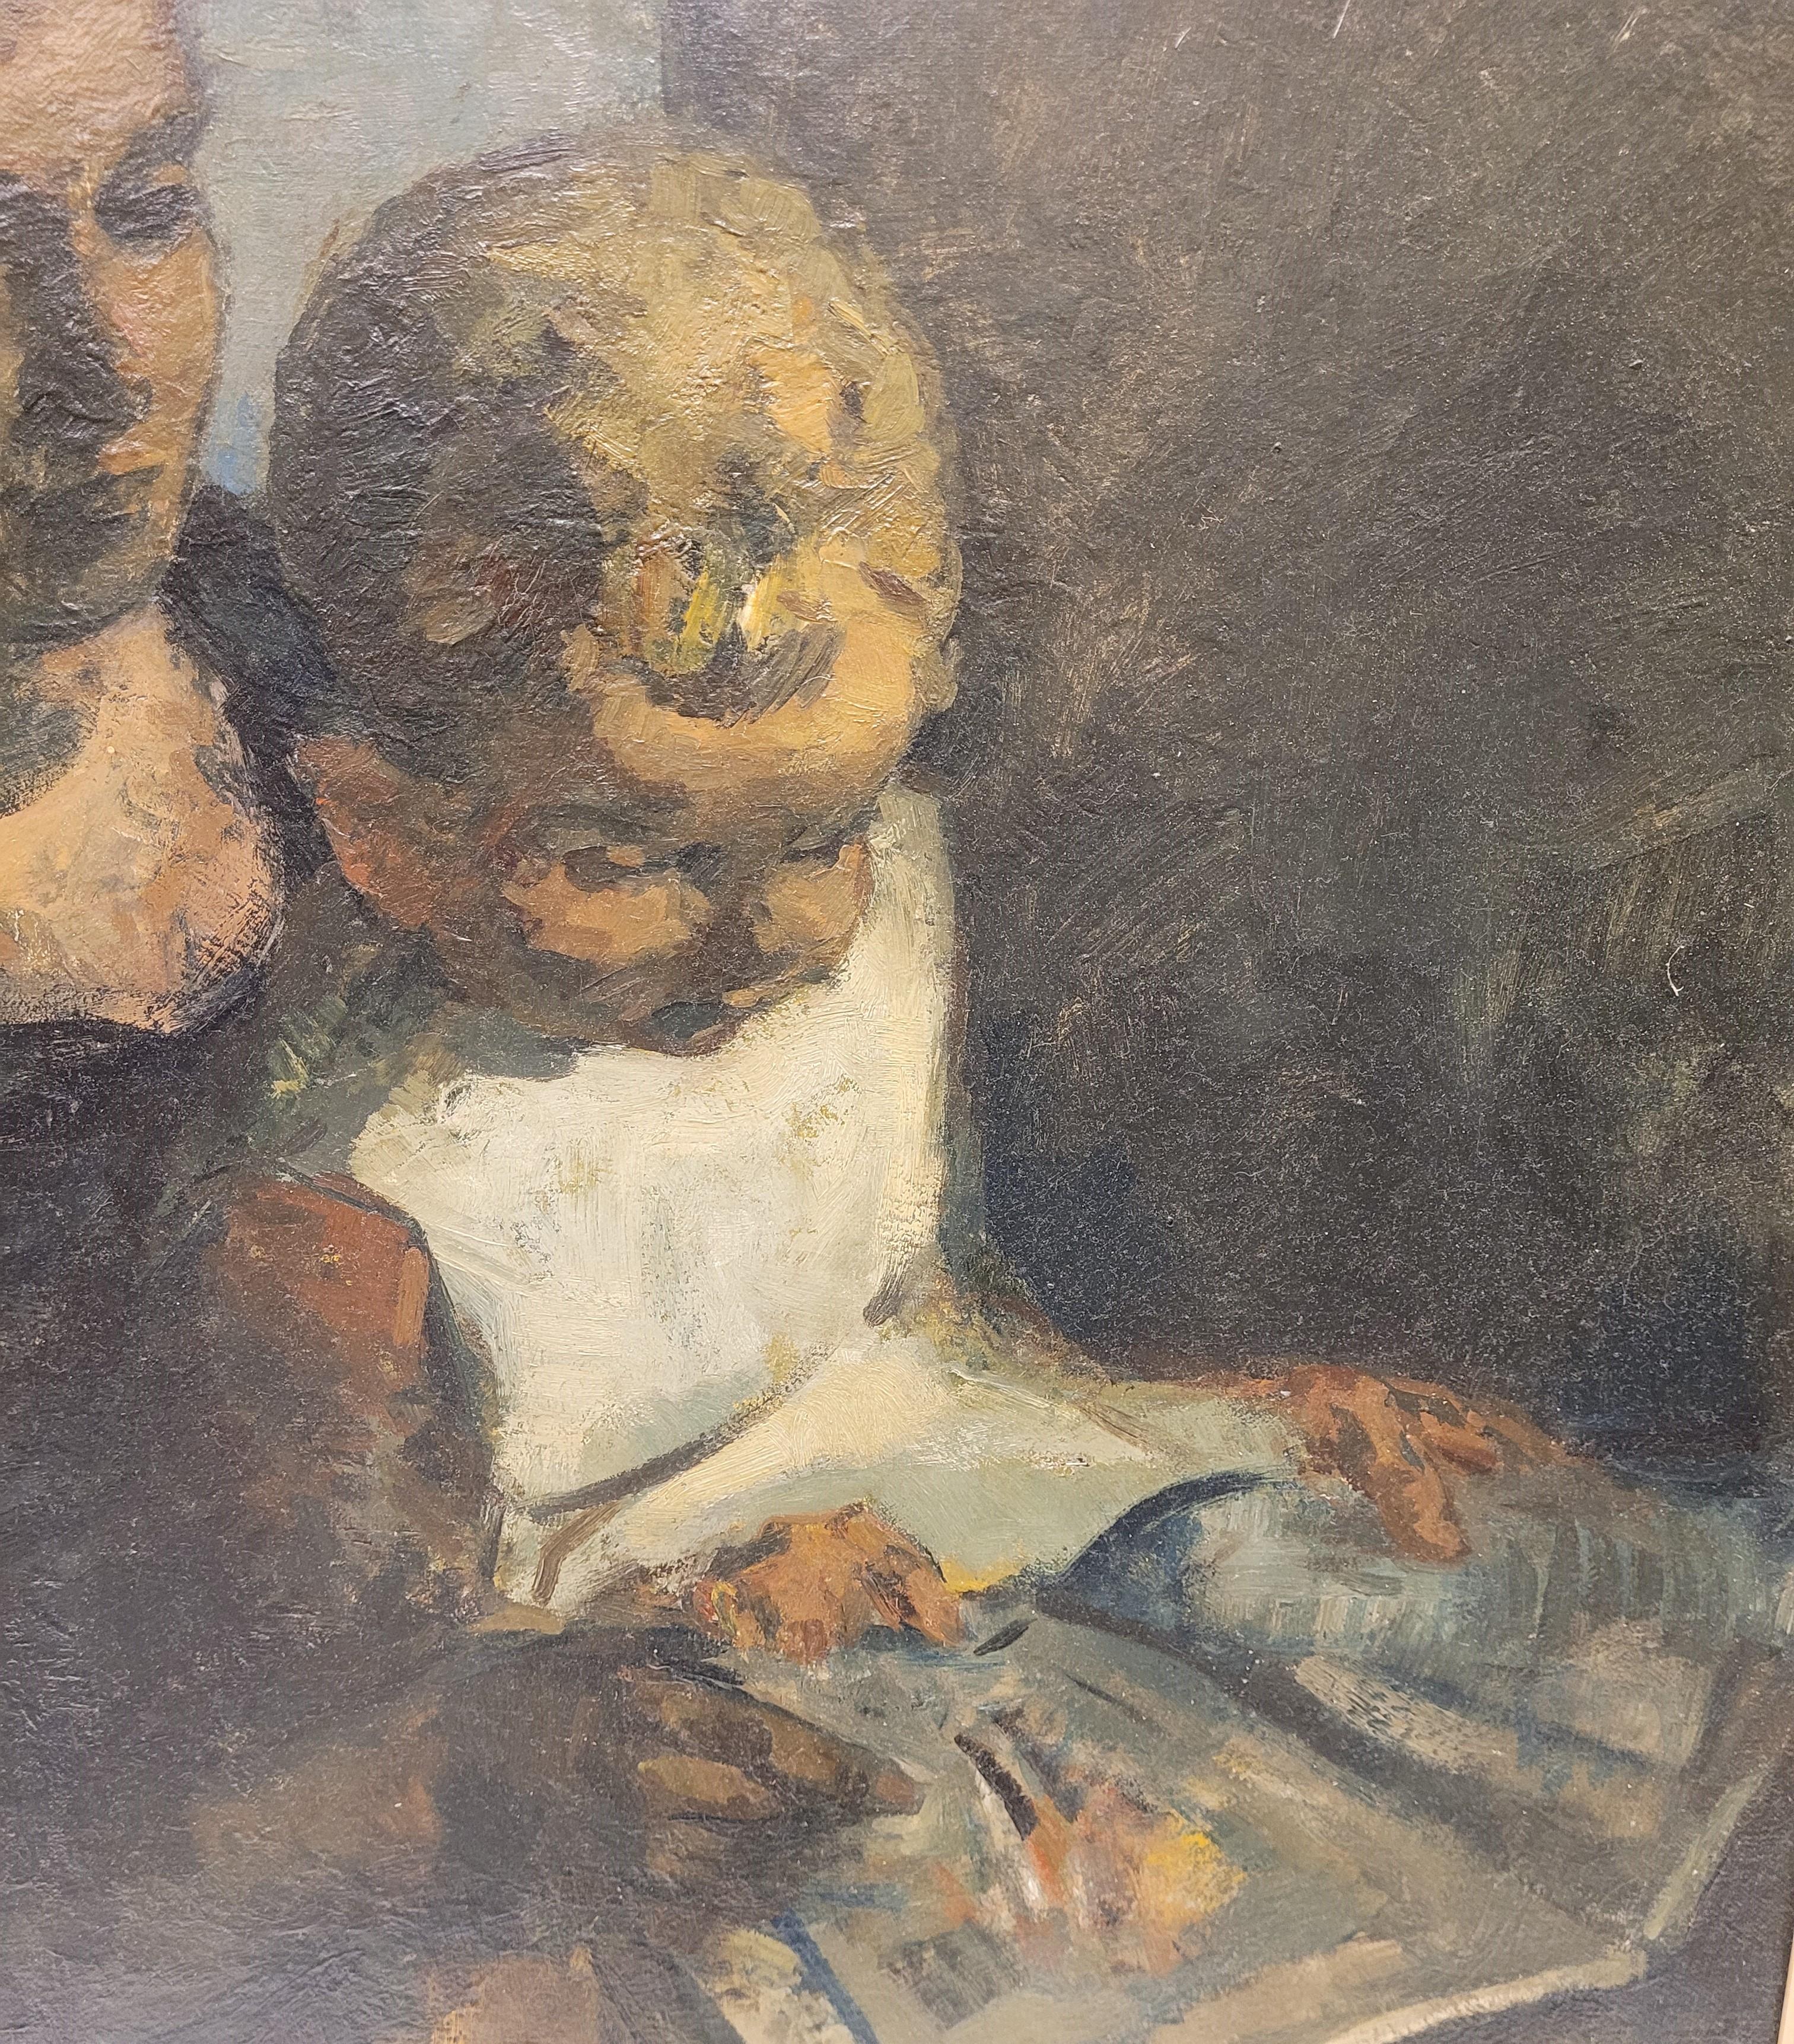 Peinture expressionniste belge Enseignant à lire, Gustave Camus, 43 signé 1